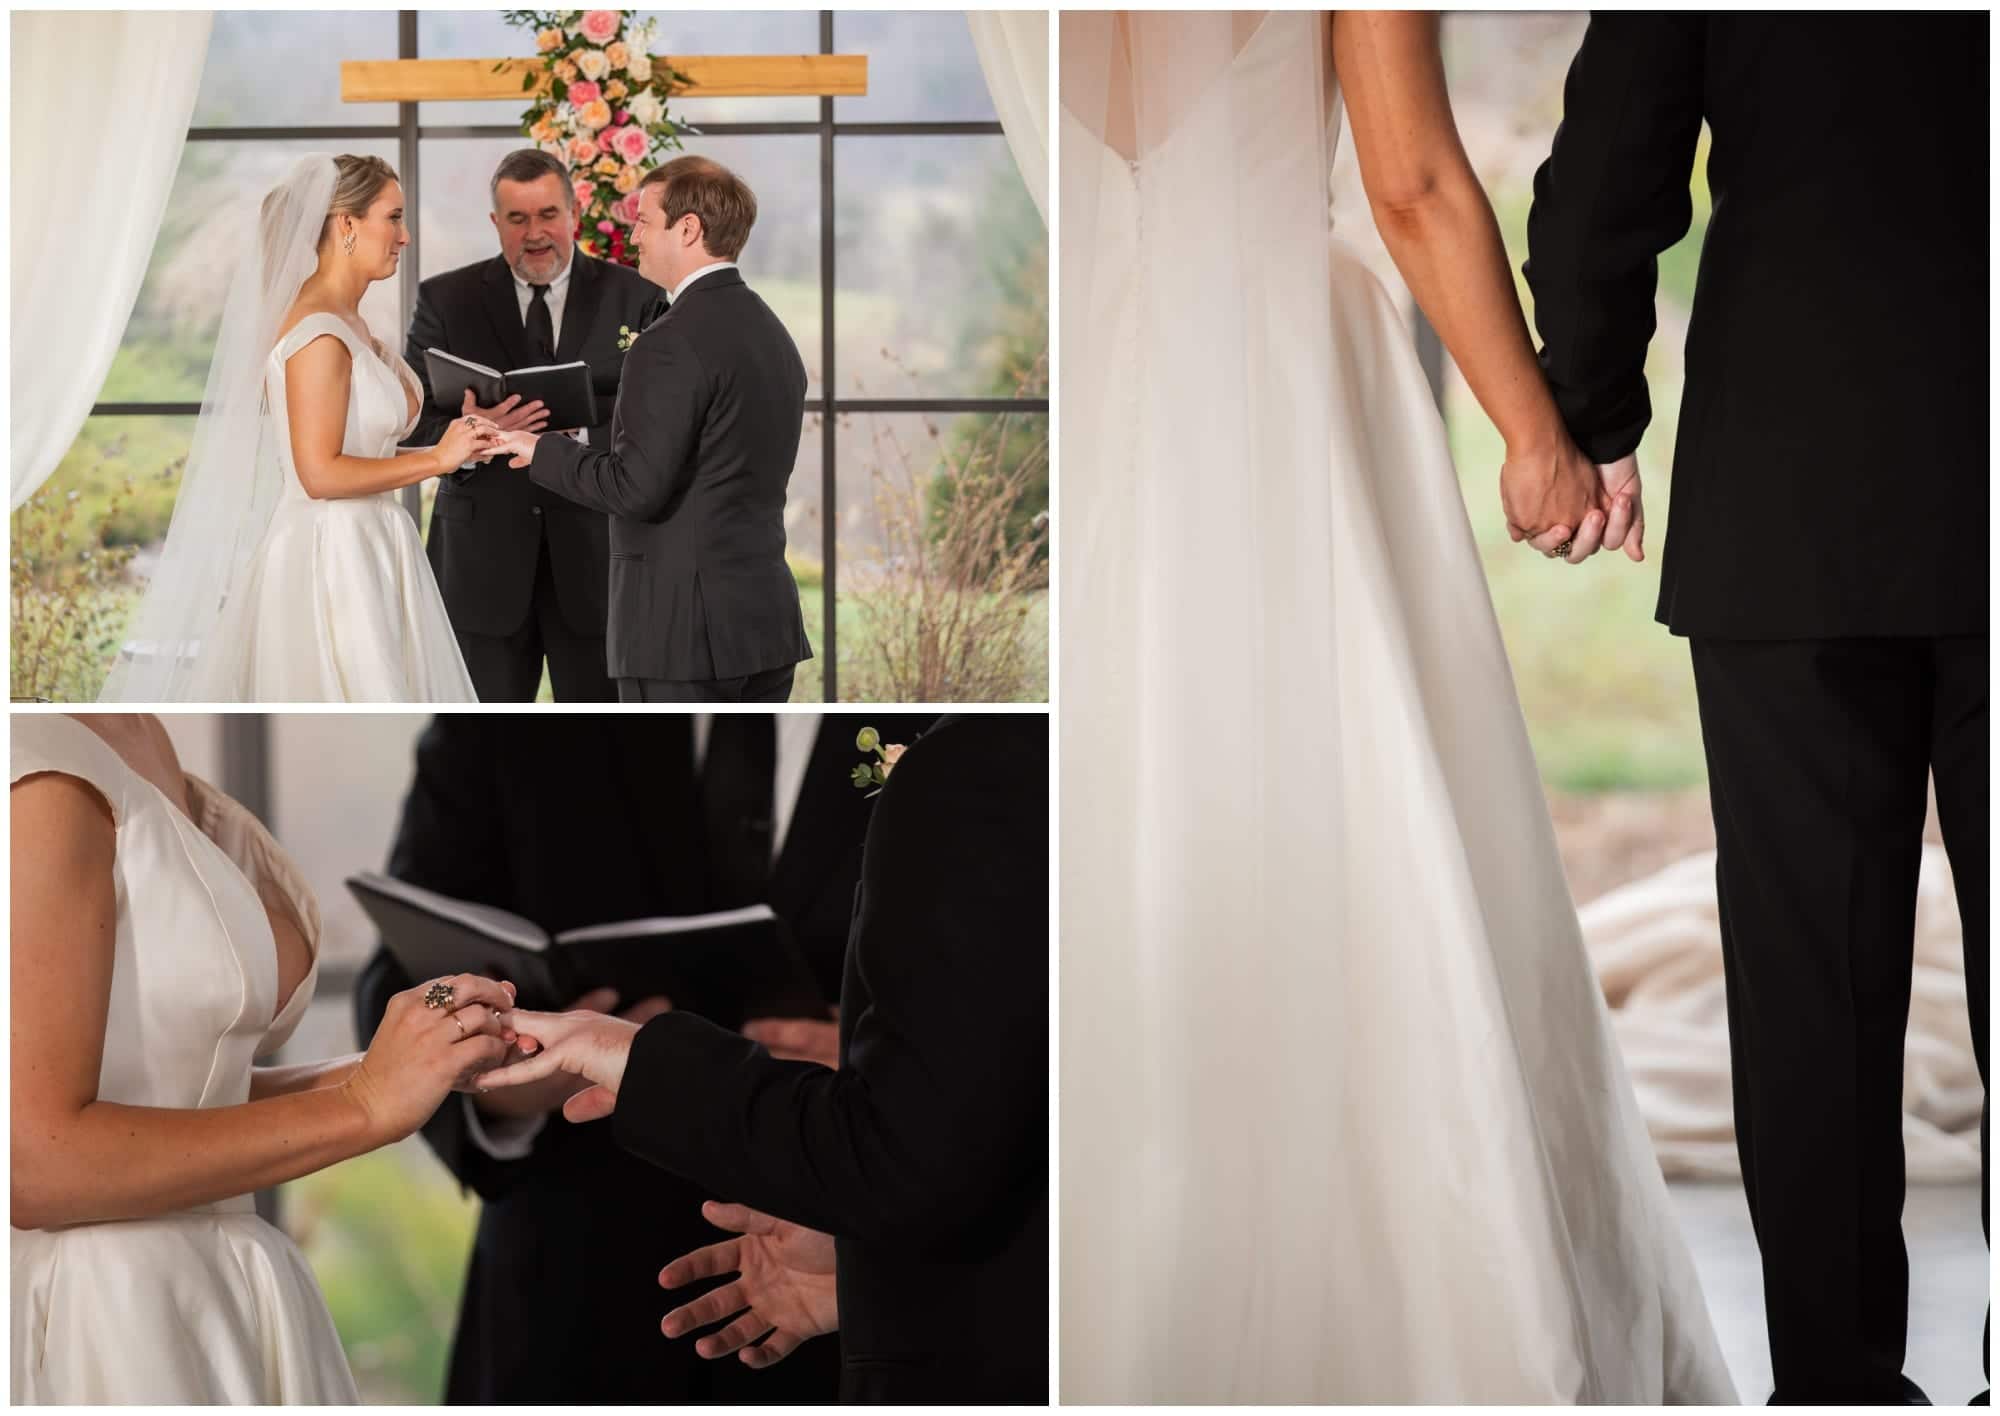 Exchange of Rings at Wedding